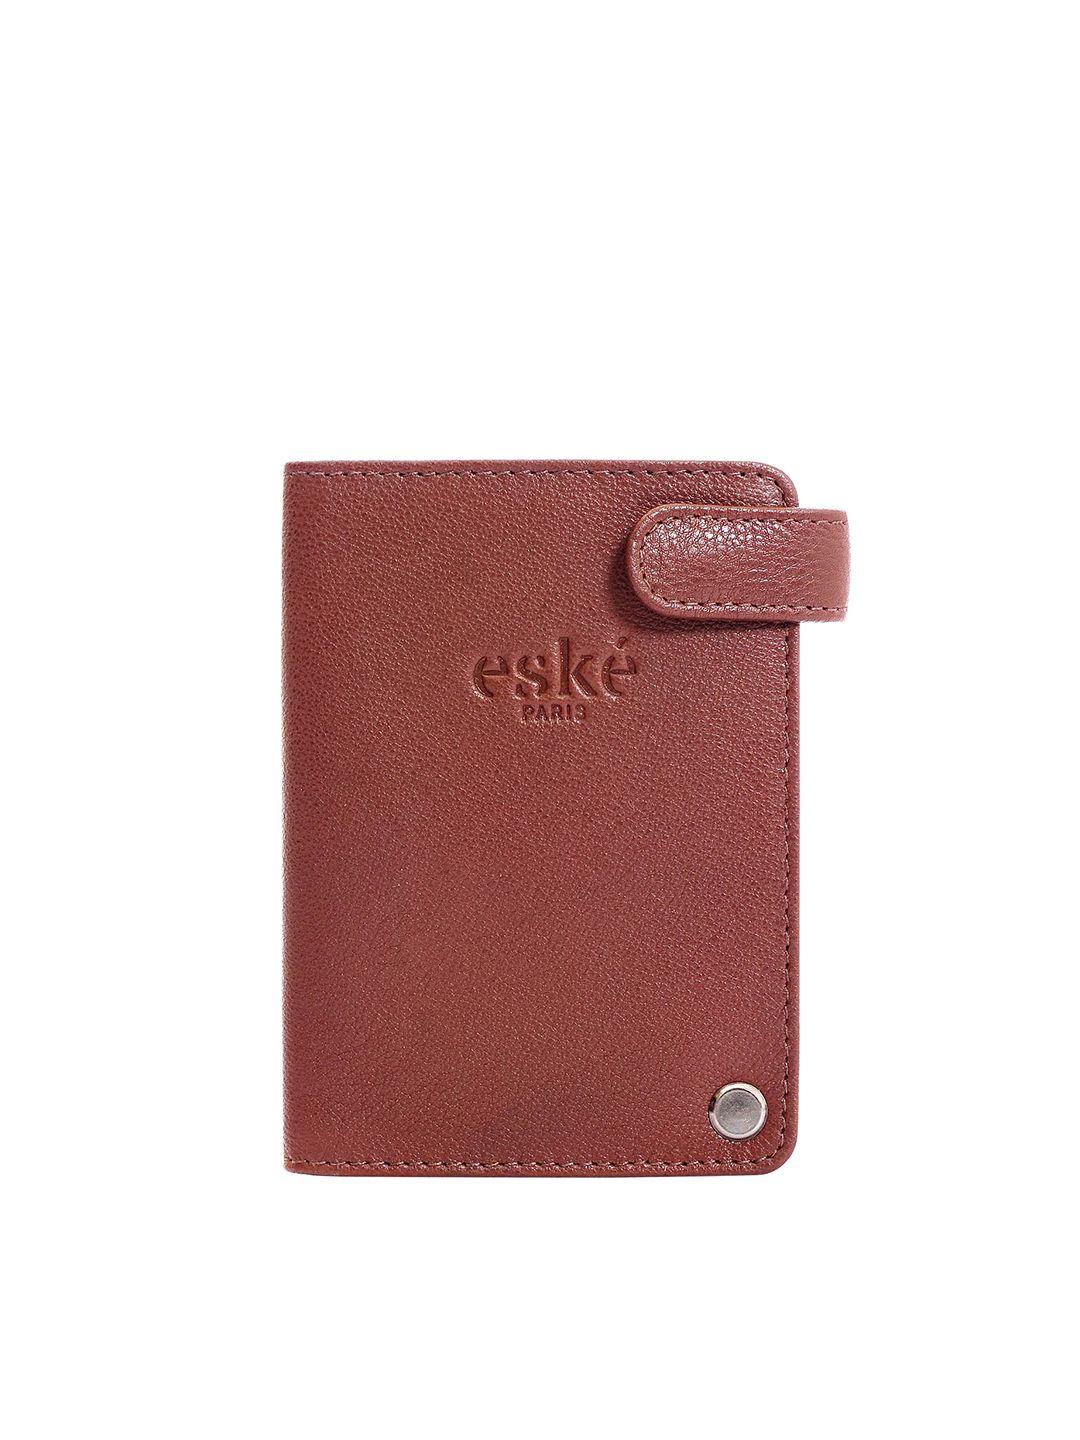 eske men leather card holder